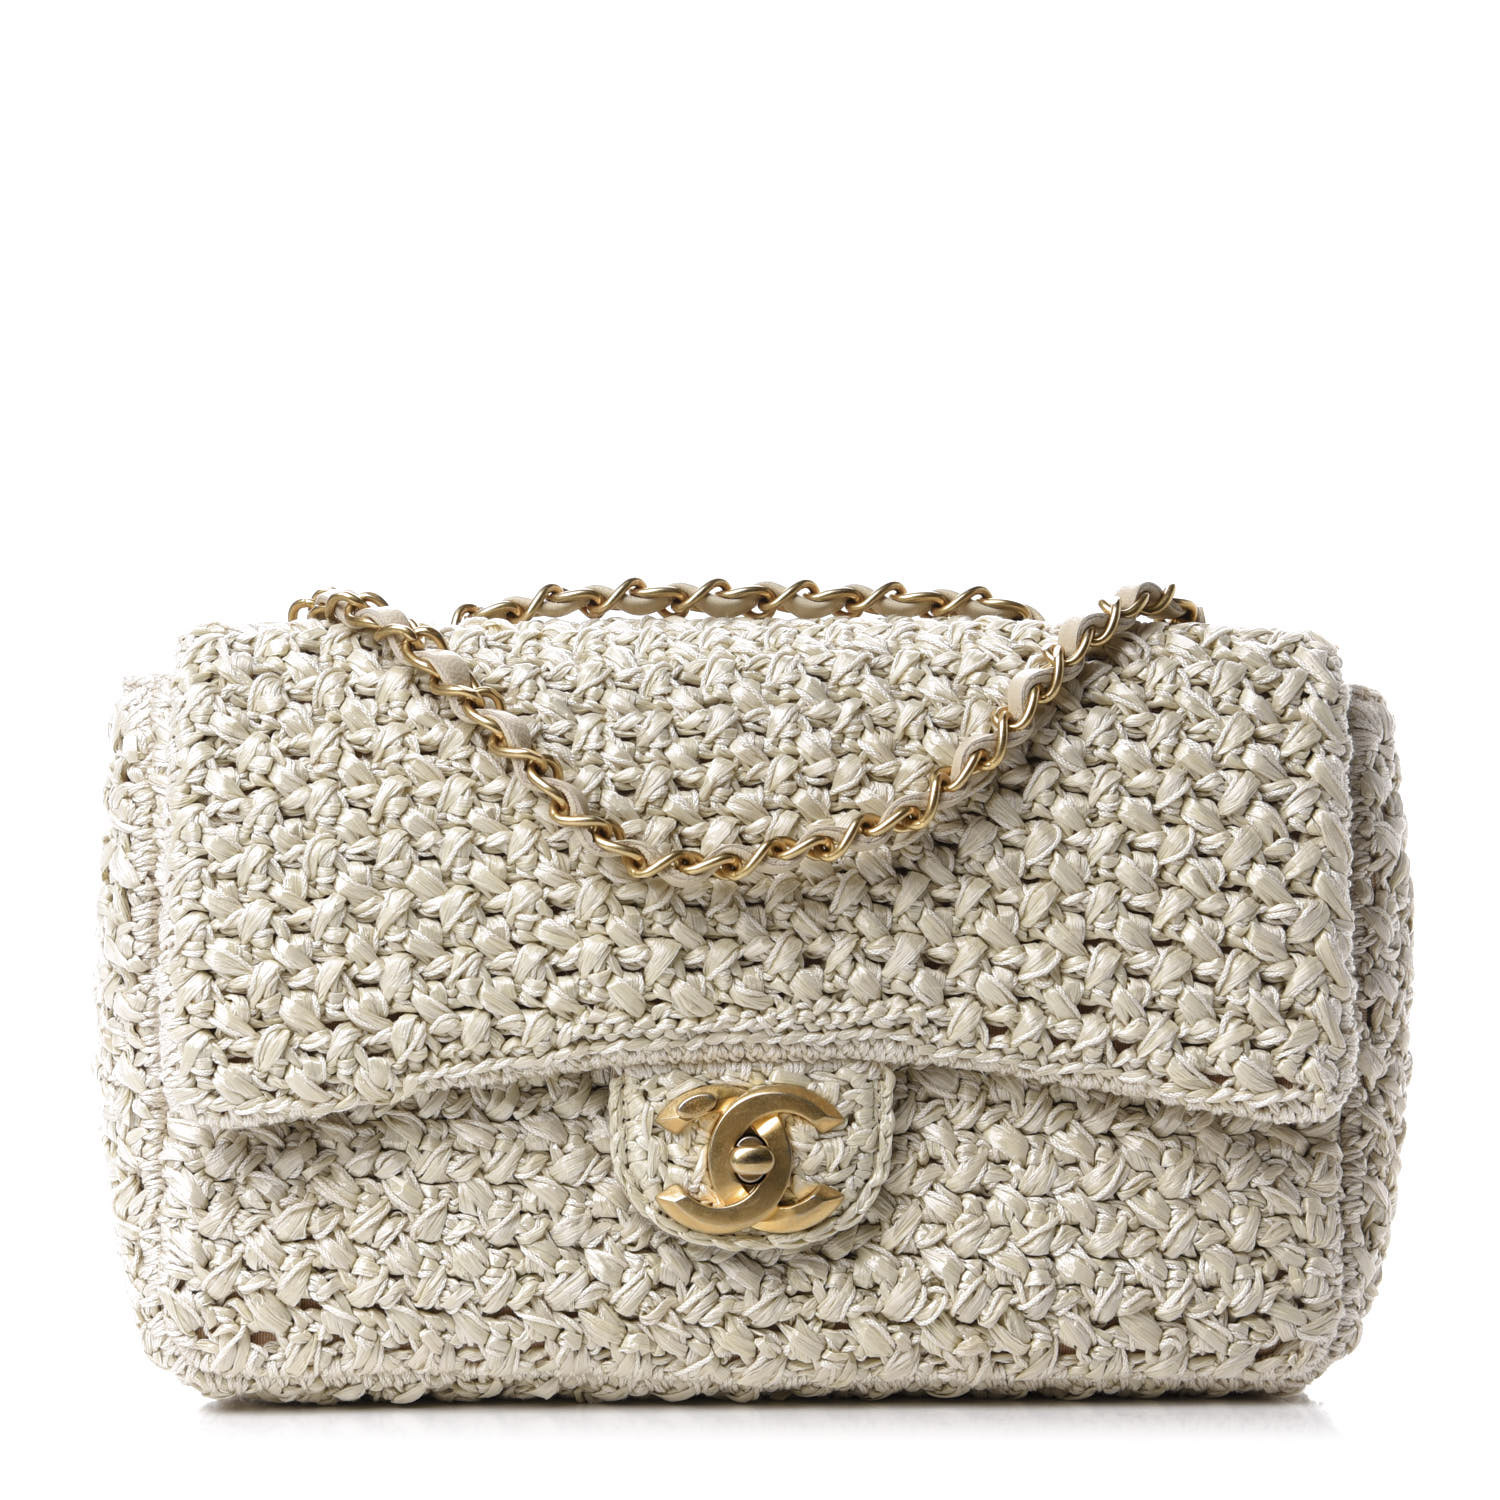 CHANEL Raffia Crochet Medium Flap Bag Beige 670123 FASHIONPHILE